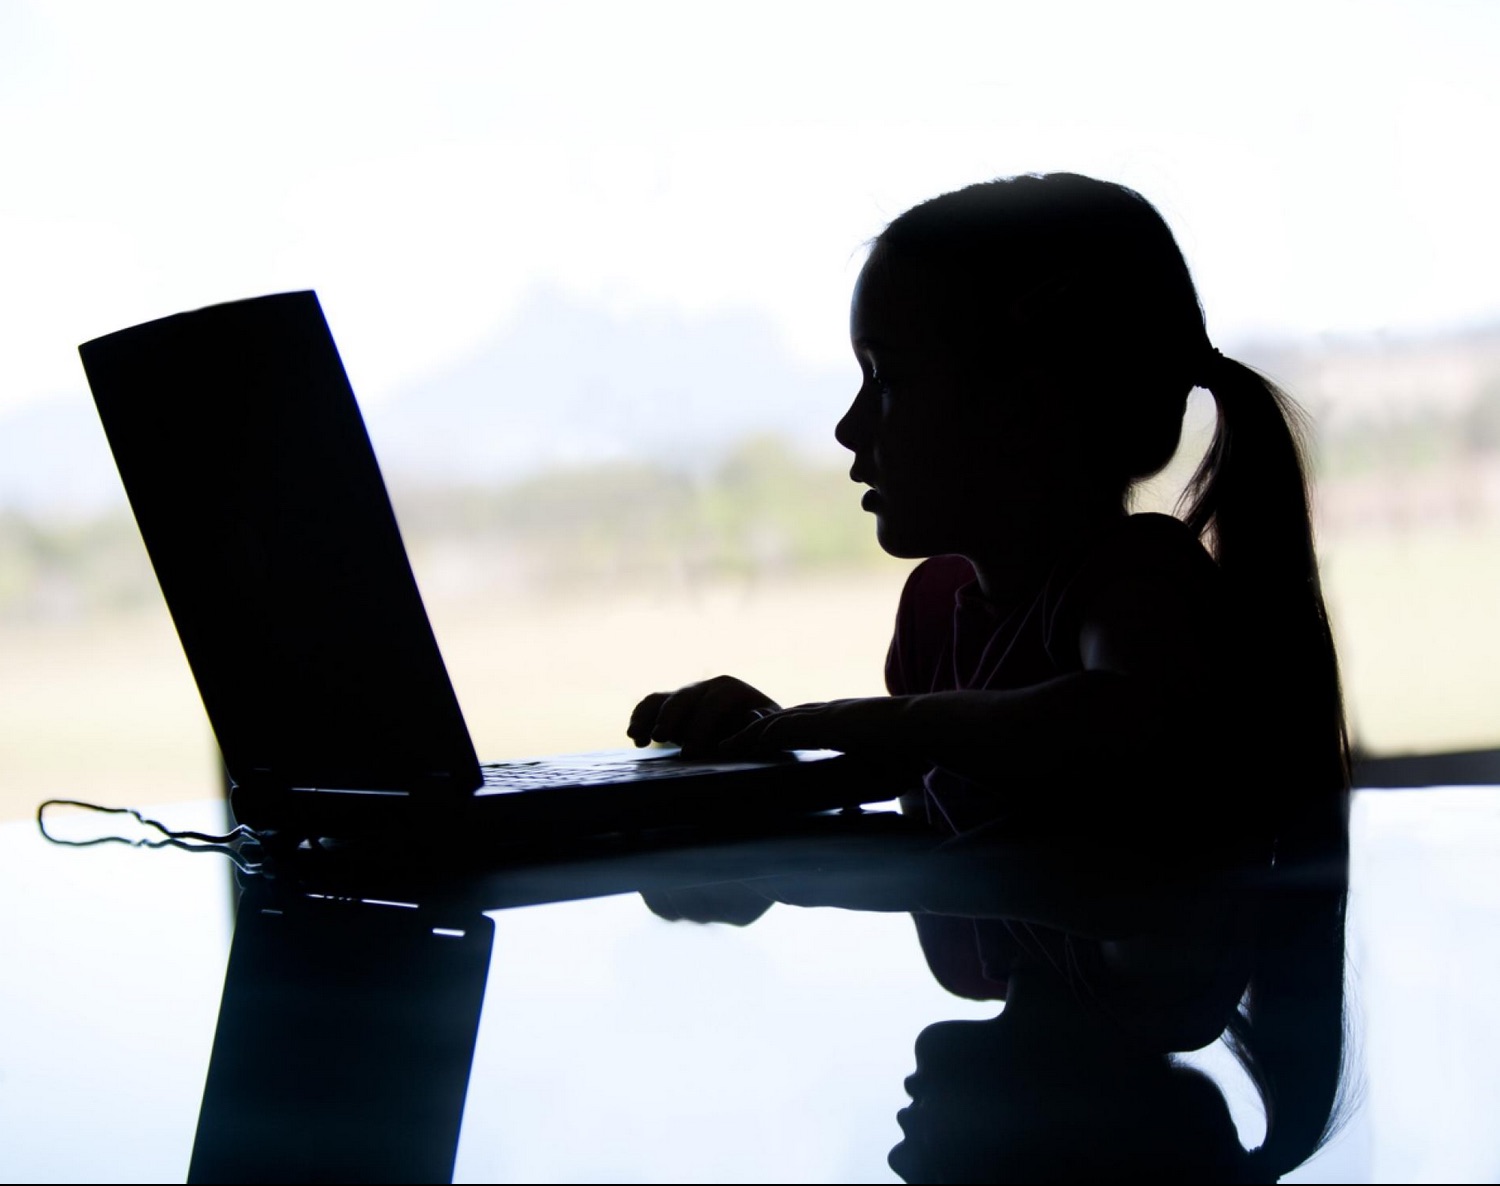 Internet safety tips for parents - Internet safety for kids